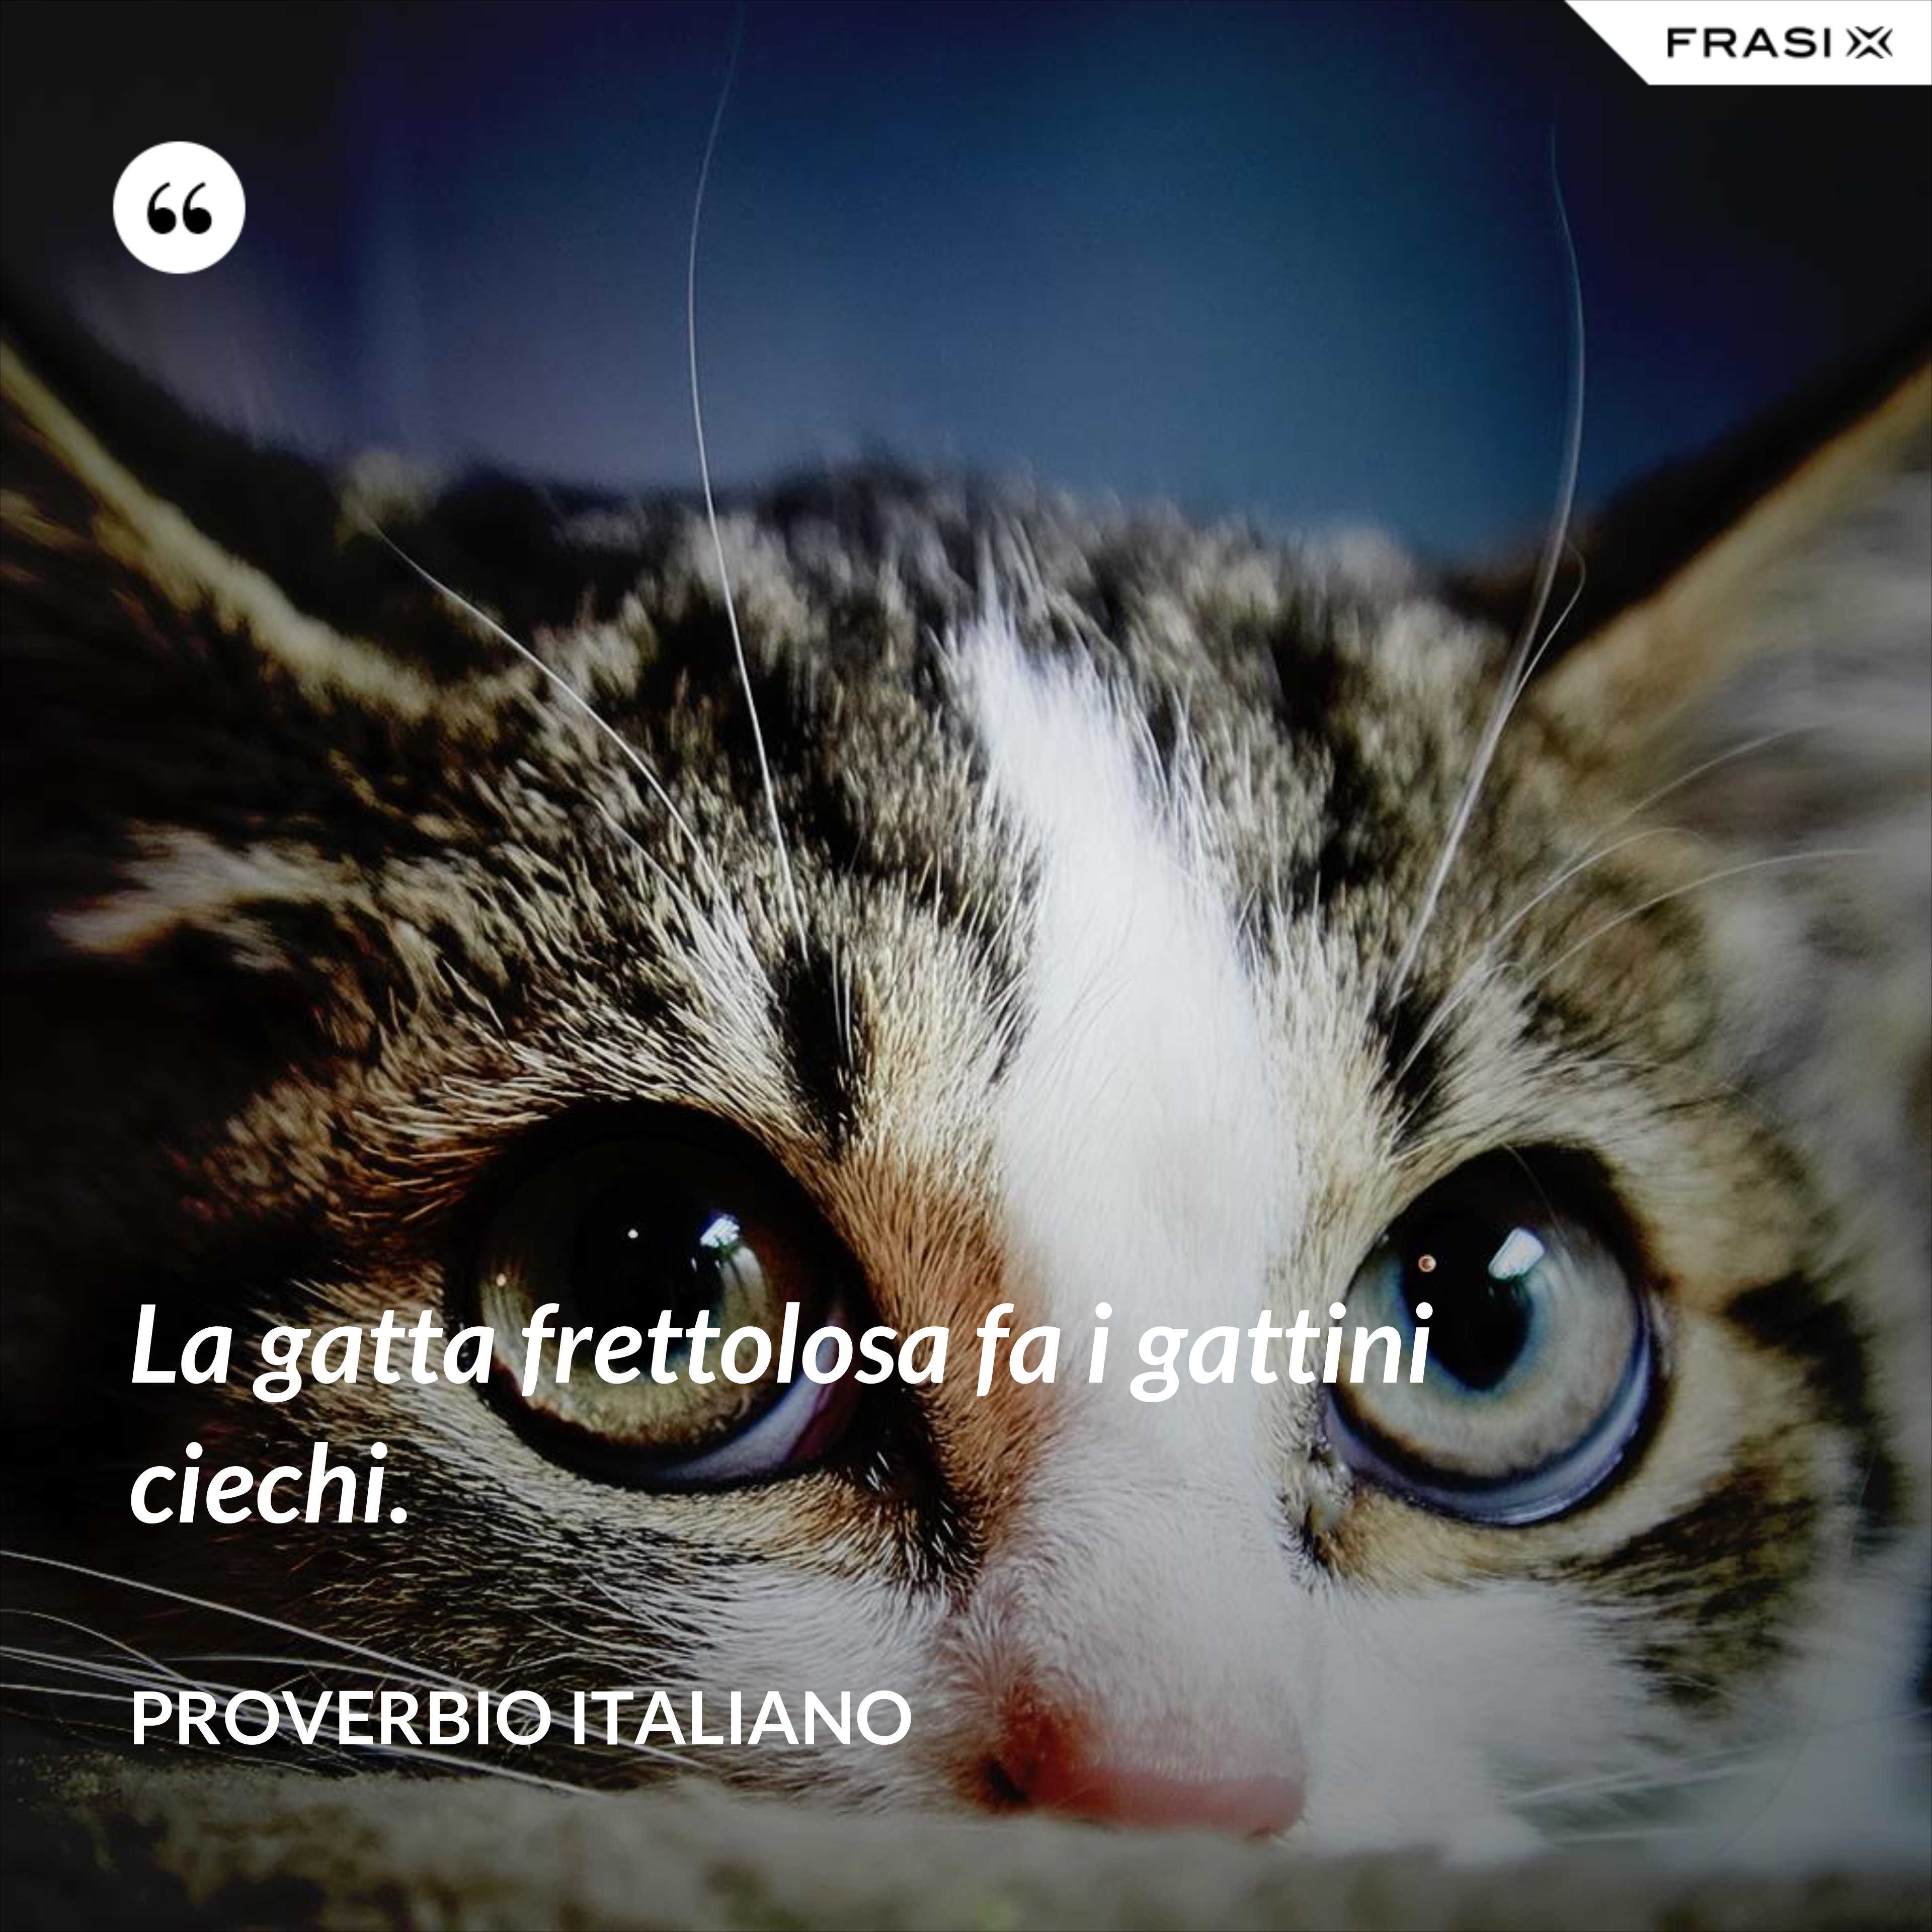 La gatta frettolosa fa i gattini ciechi. - Proverbio italiano